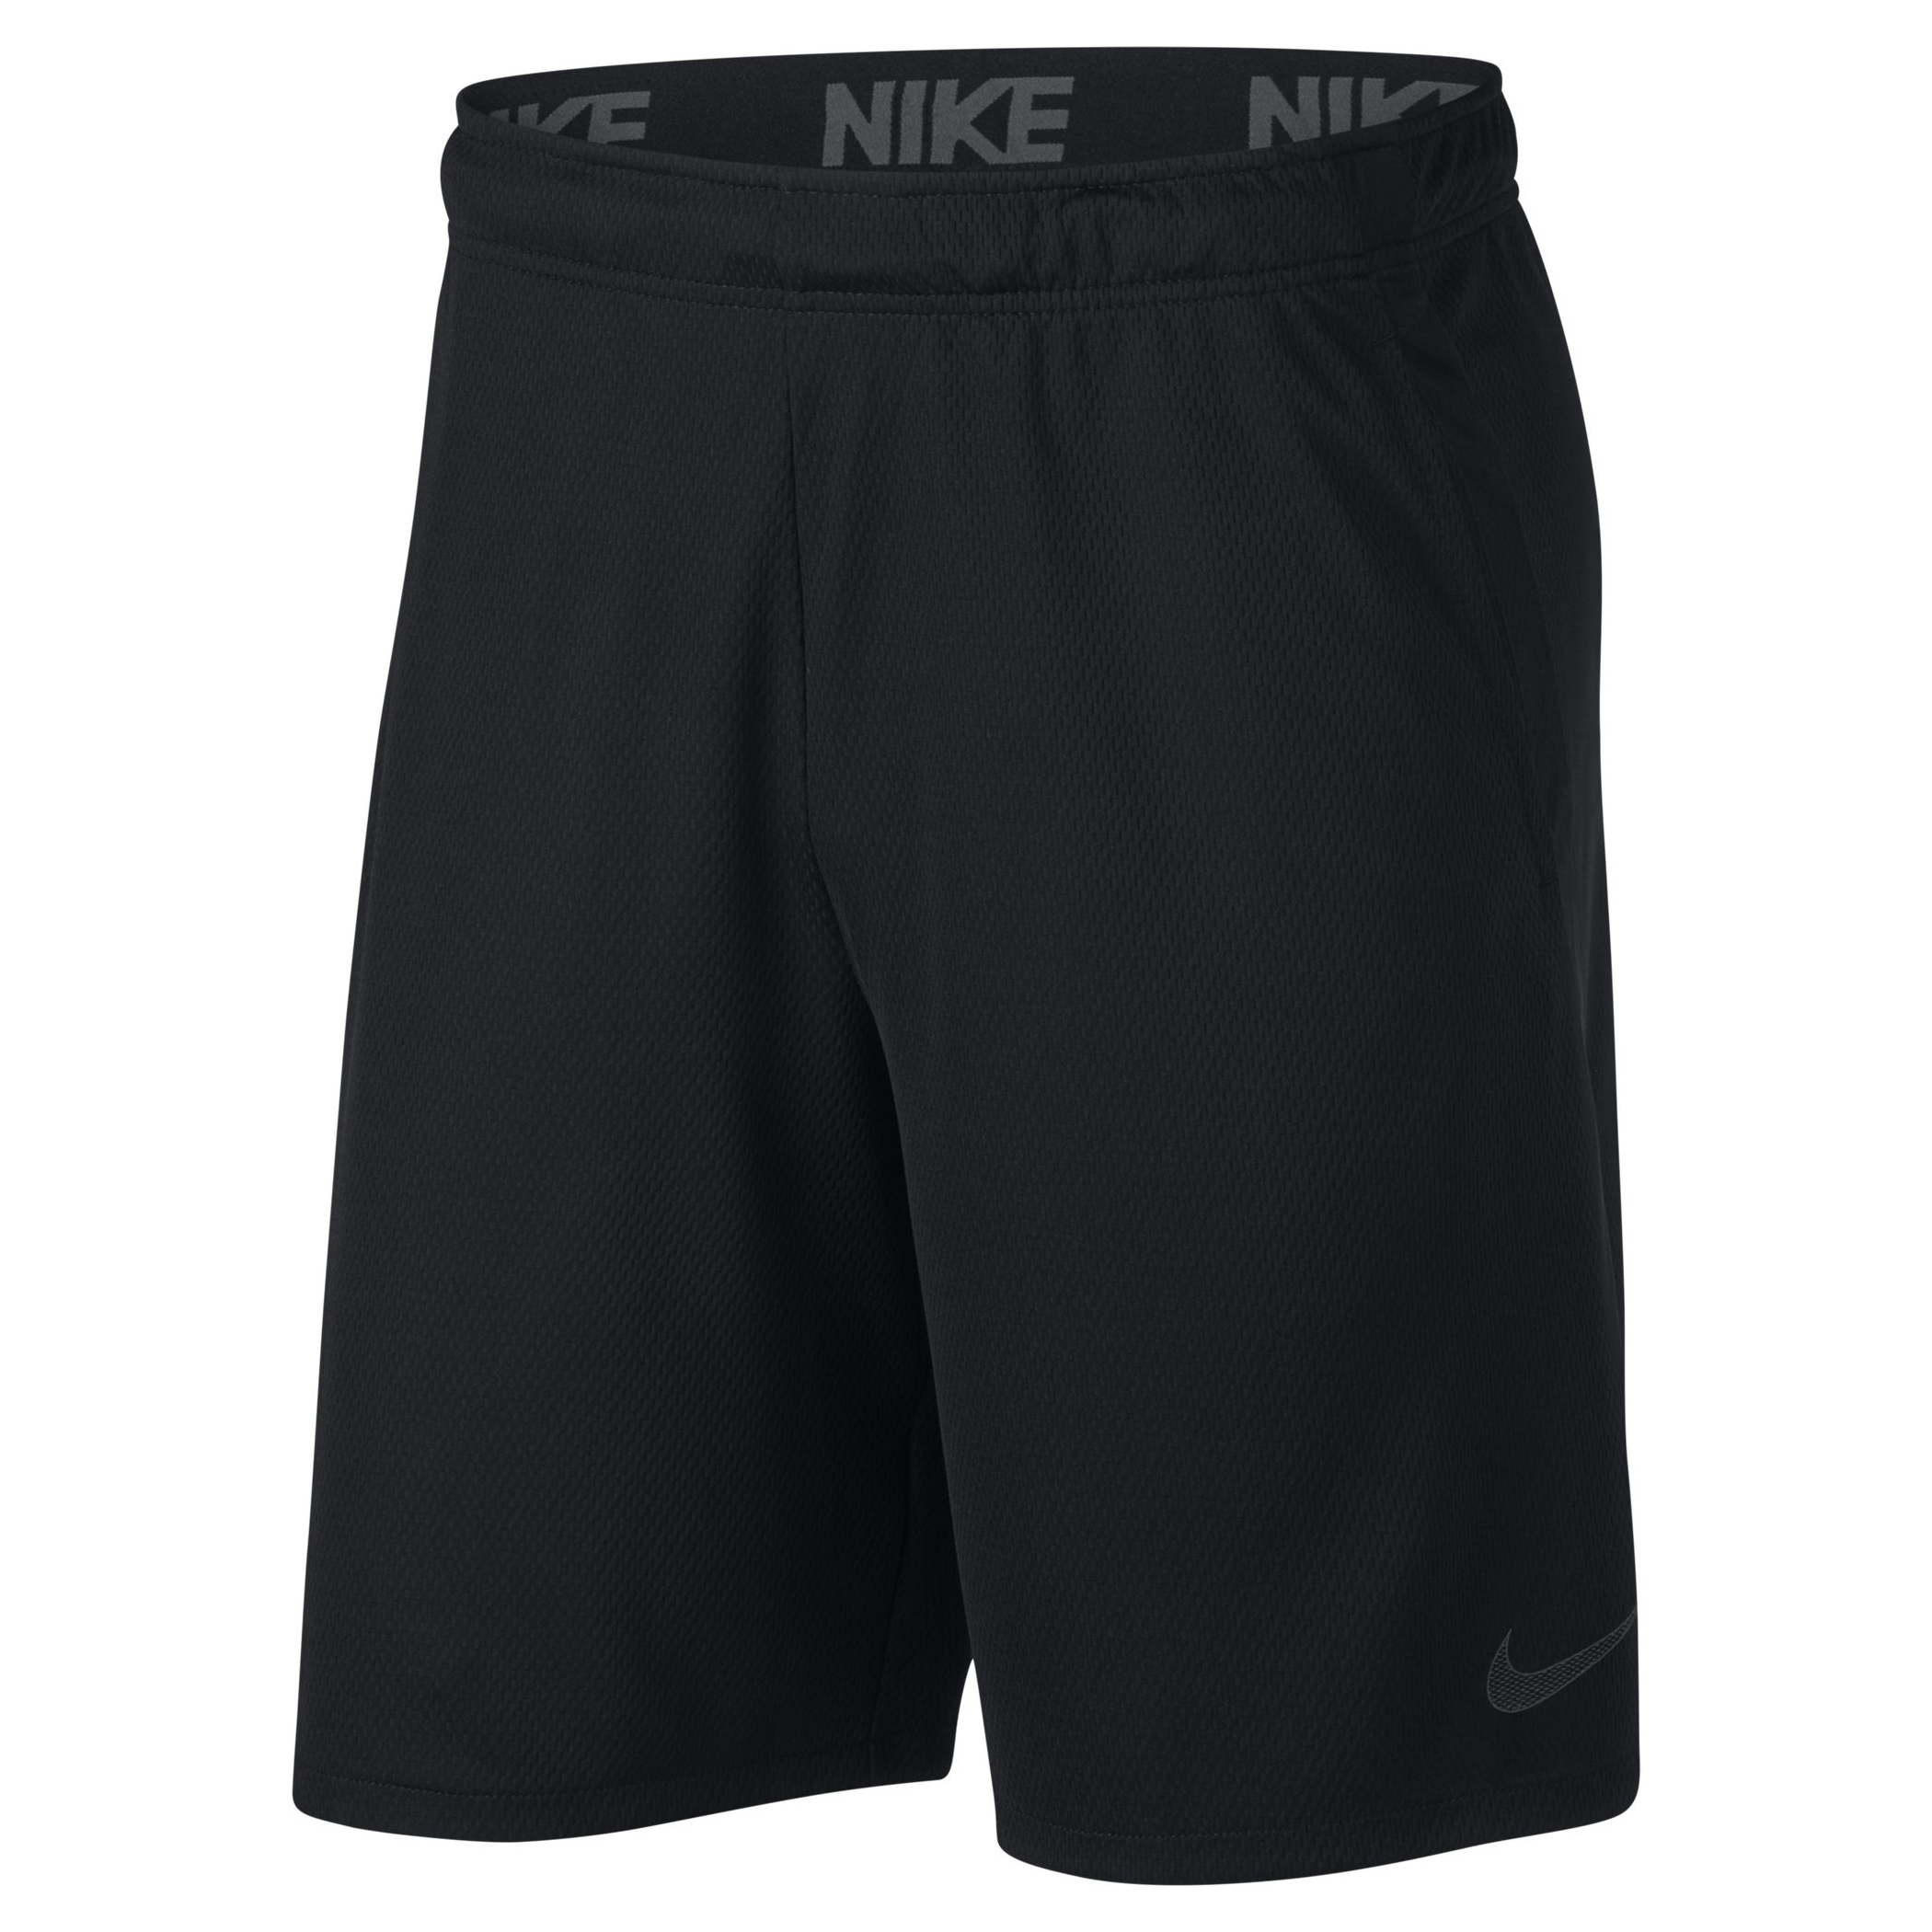 Шорты nike dri. Nike Dri Fit шорты 4.0. Шорты найк драй фит. Nike Training Dry шорты. Шорты Nike Dri Fit мужские.